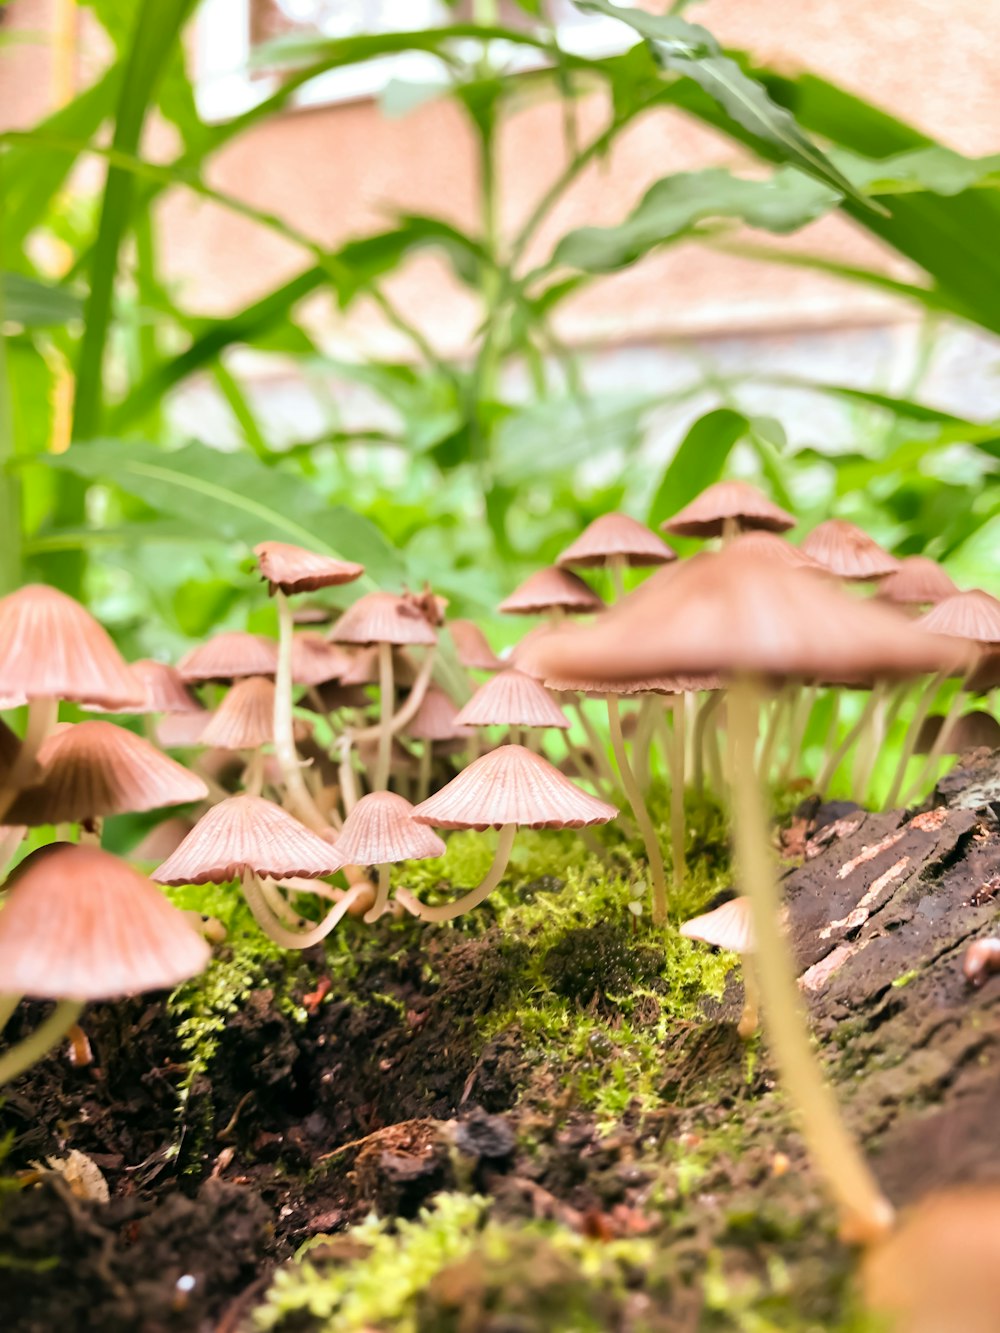 brown mushrooms on brown soil